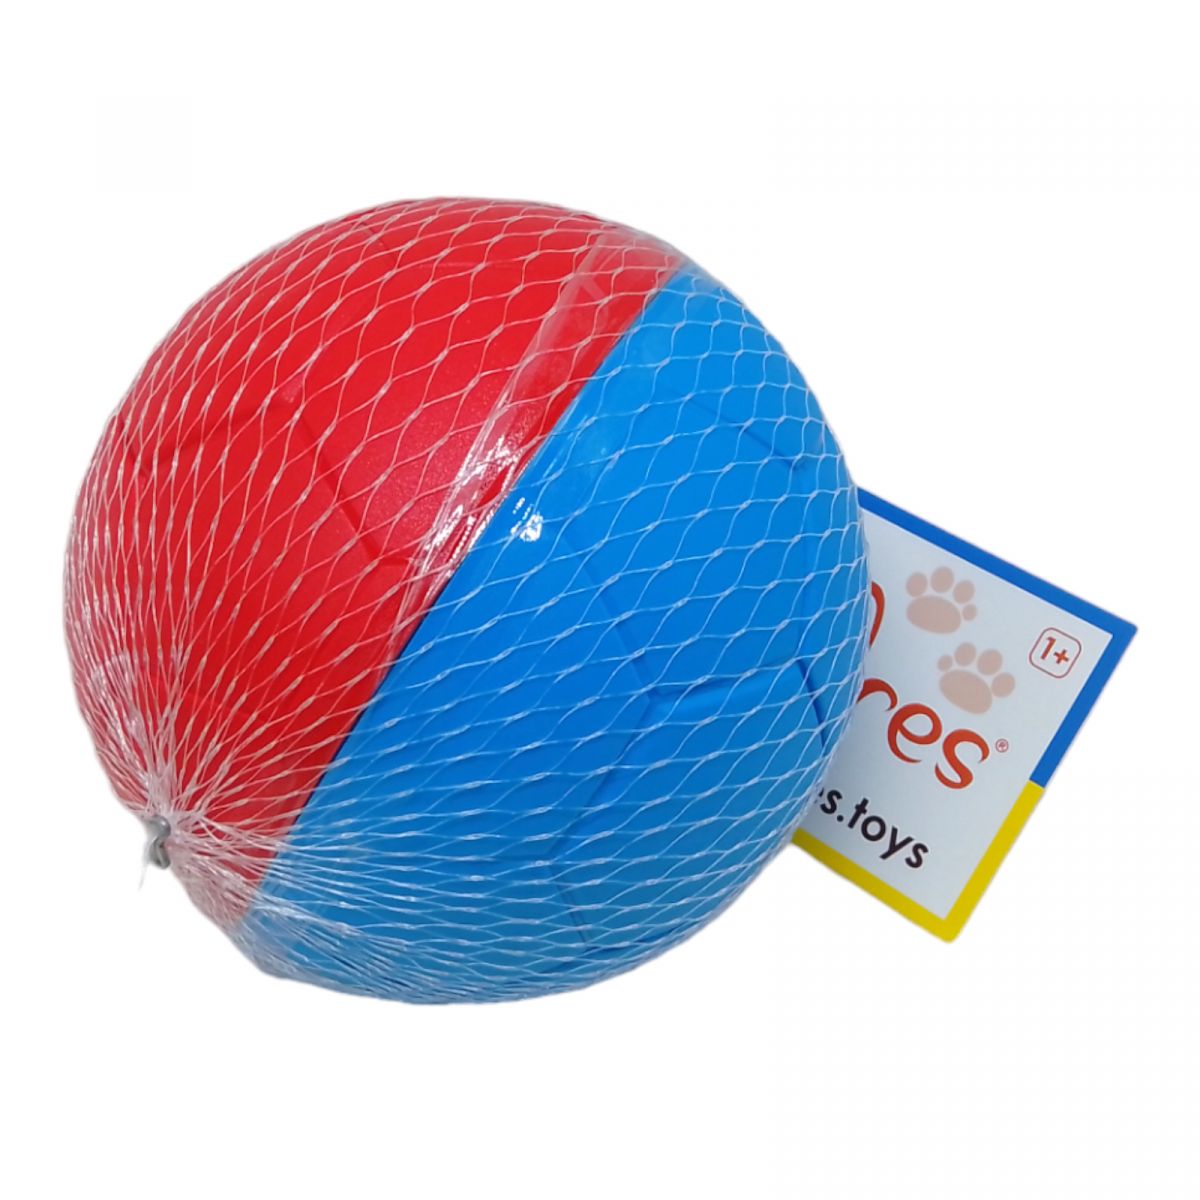 Формочка для песка "Мячик", красно-синяя